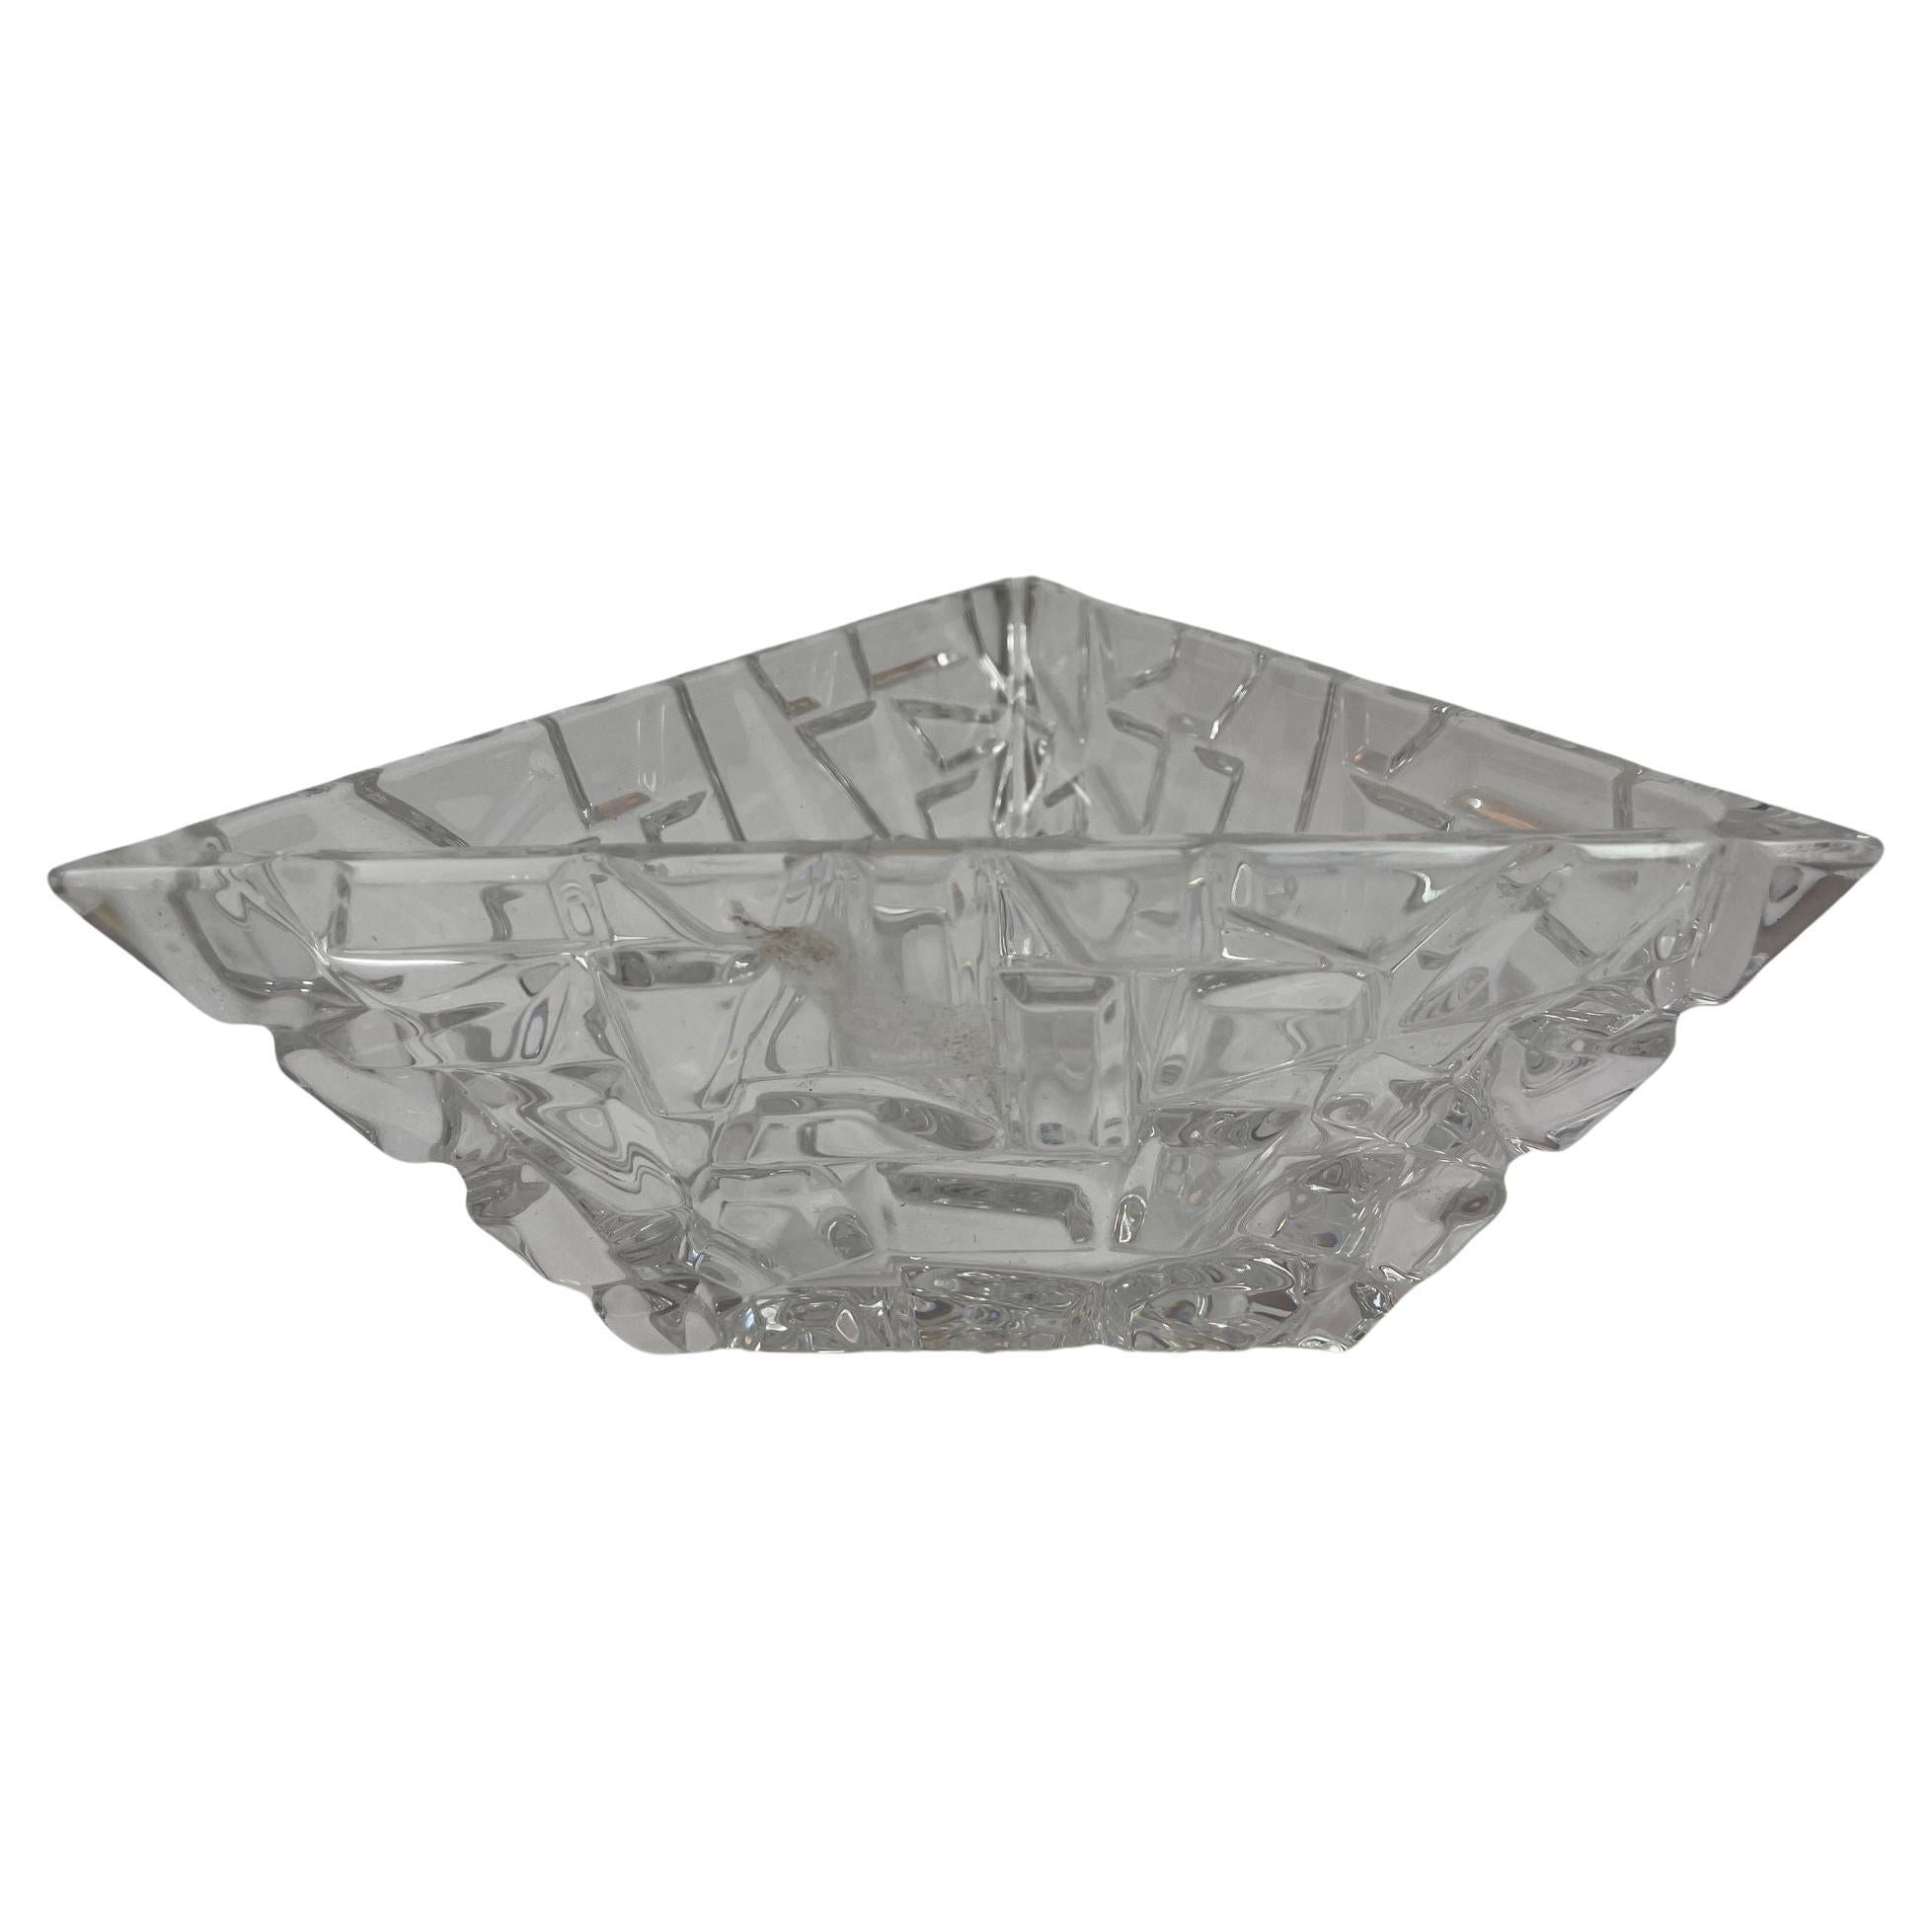 Tiffany Co Sierra Triangular Clear Cut Crystal Bowl Ashtray